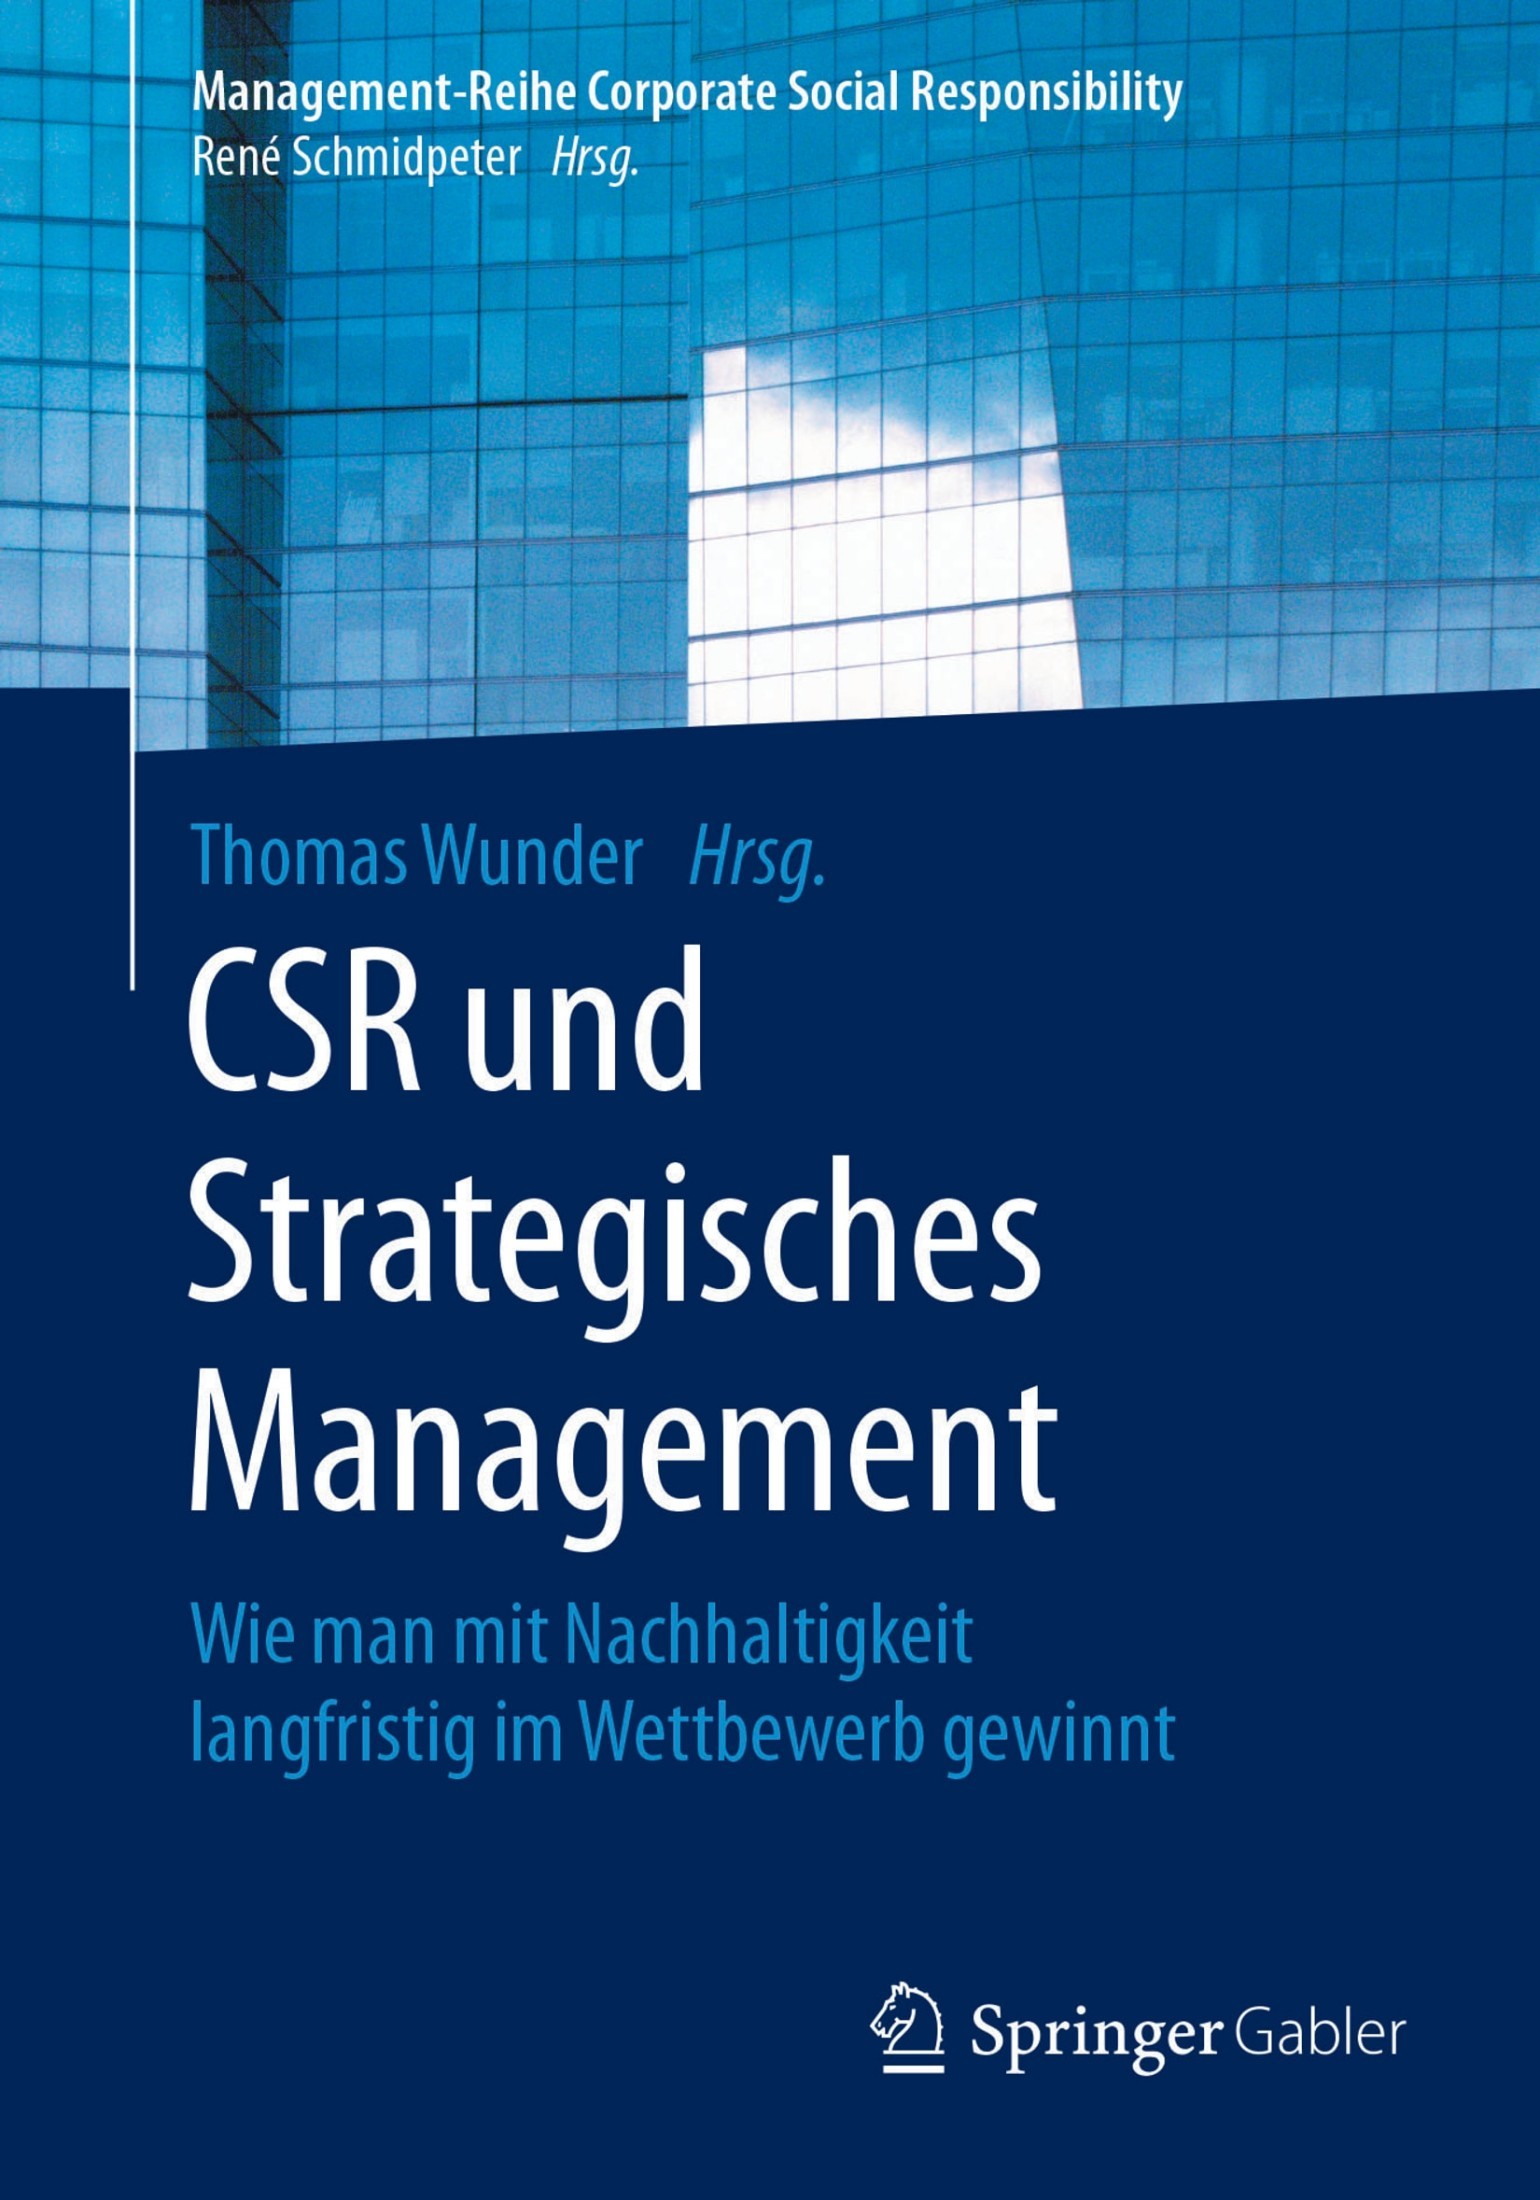 CSR Und Strategisches Management